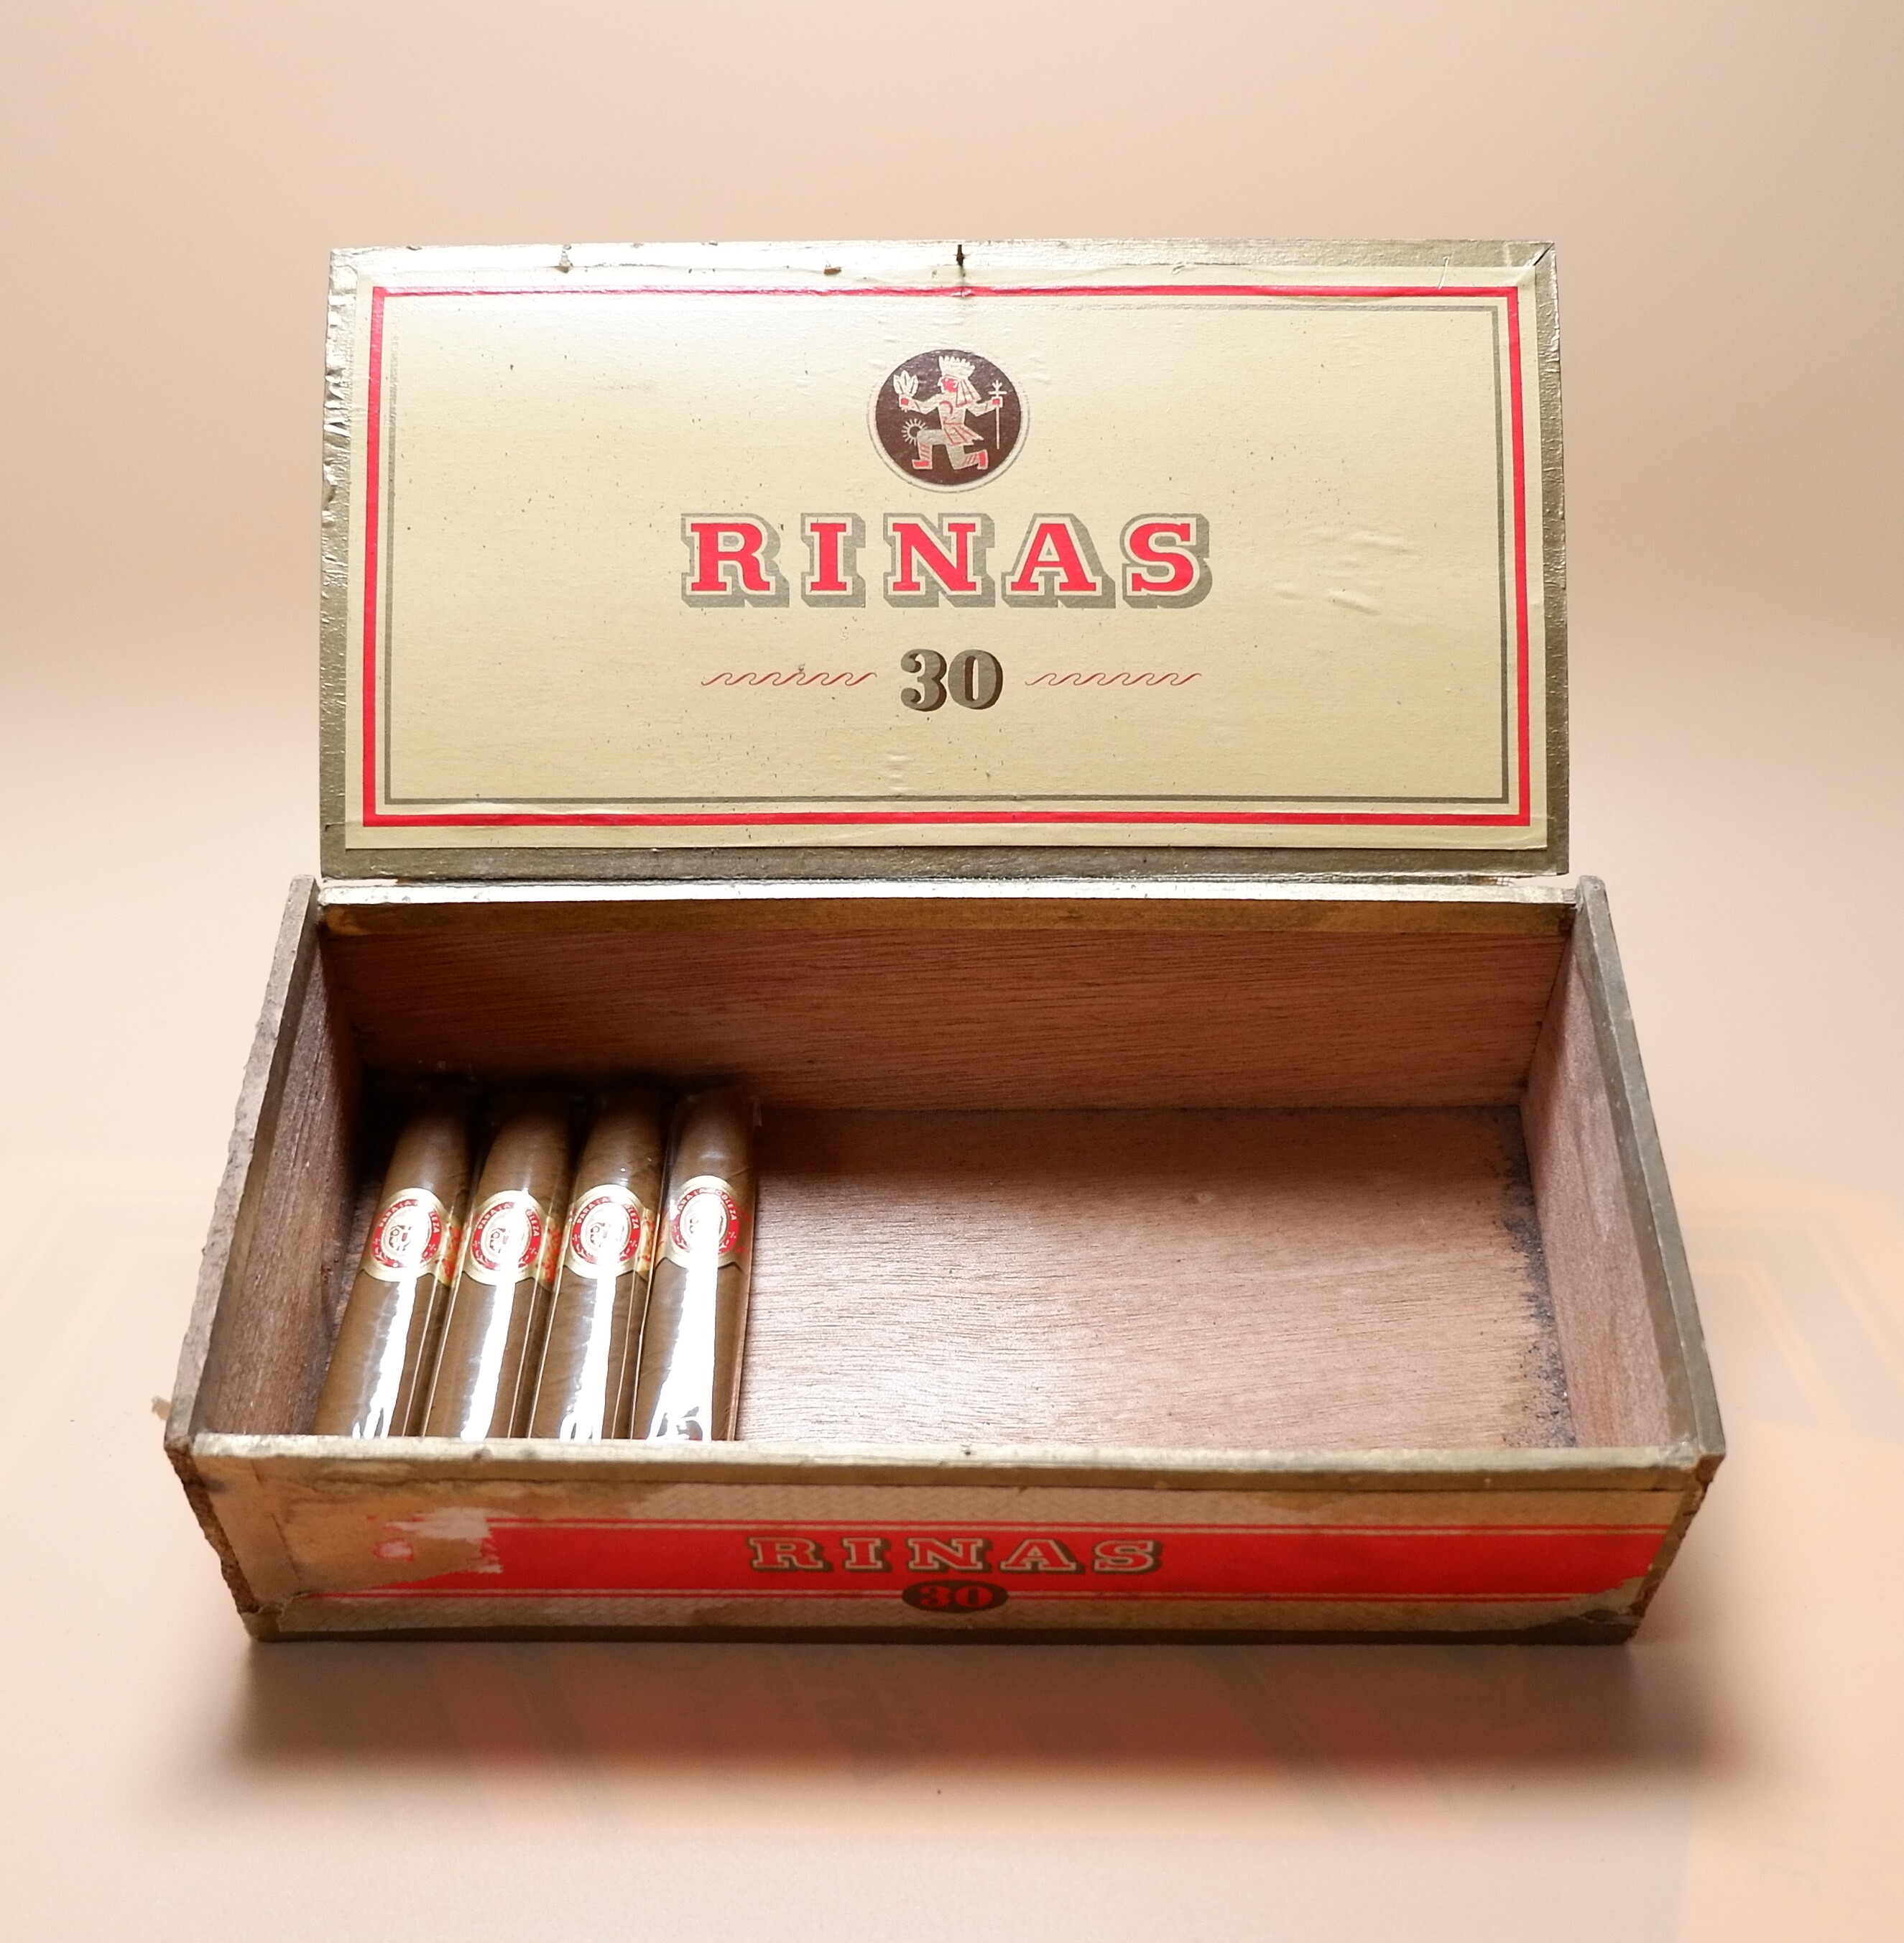 Zigarrenmarke RINAS 30 (Volkskunde- und Freilichtmuseum Roscheider Hof CC0)